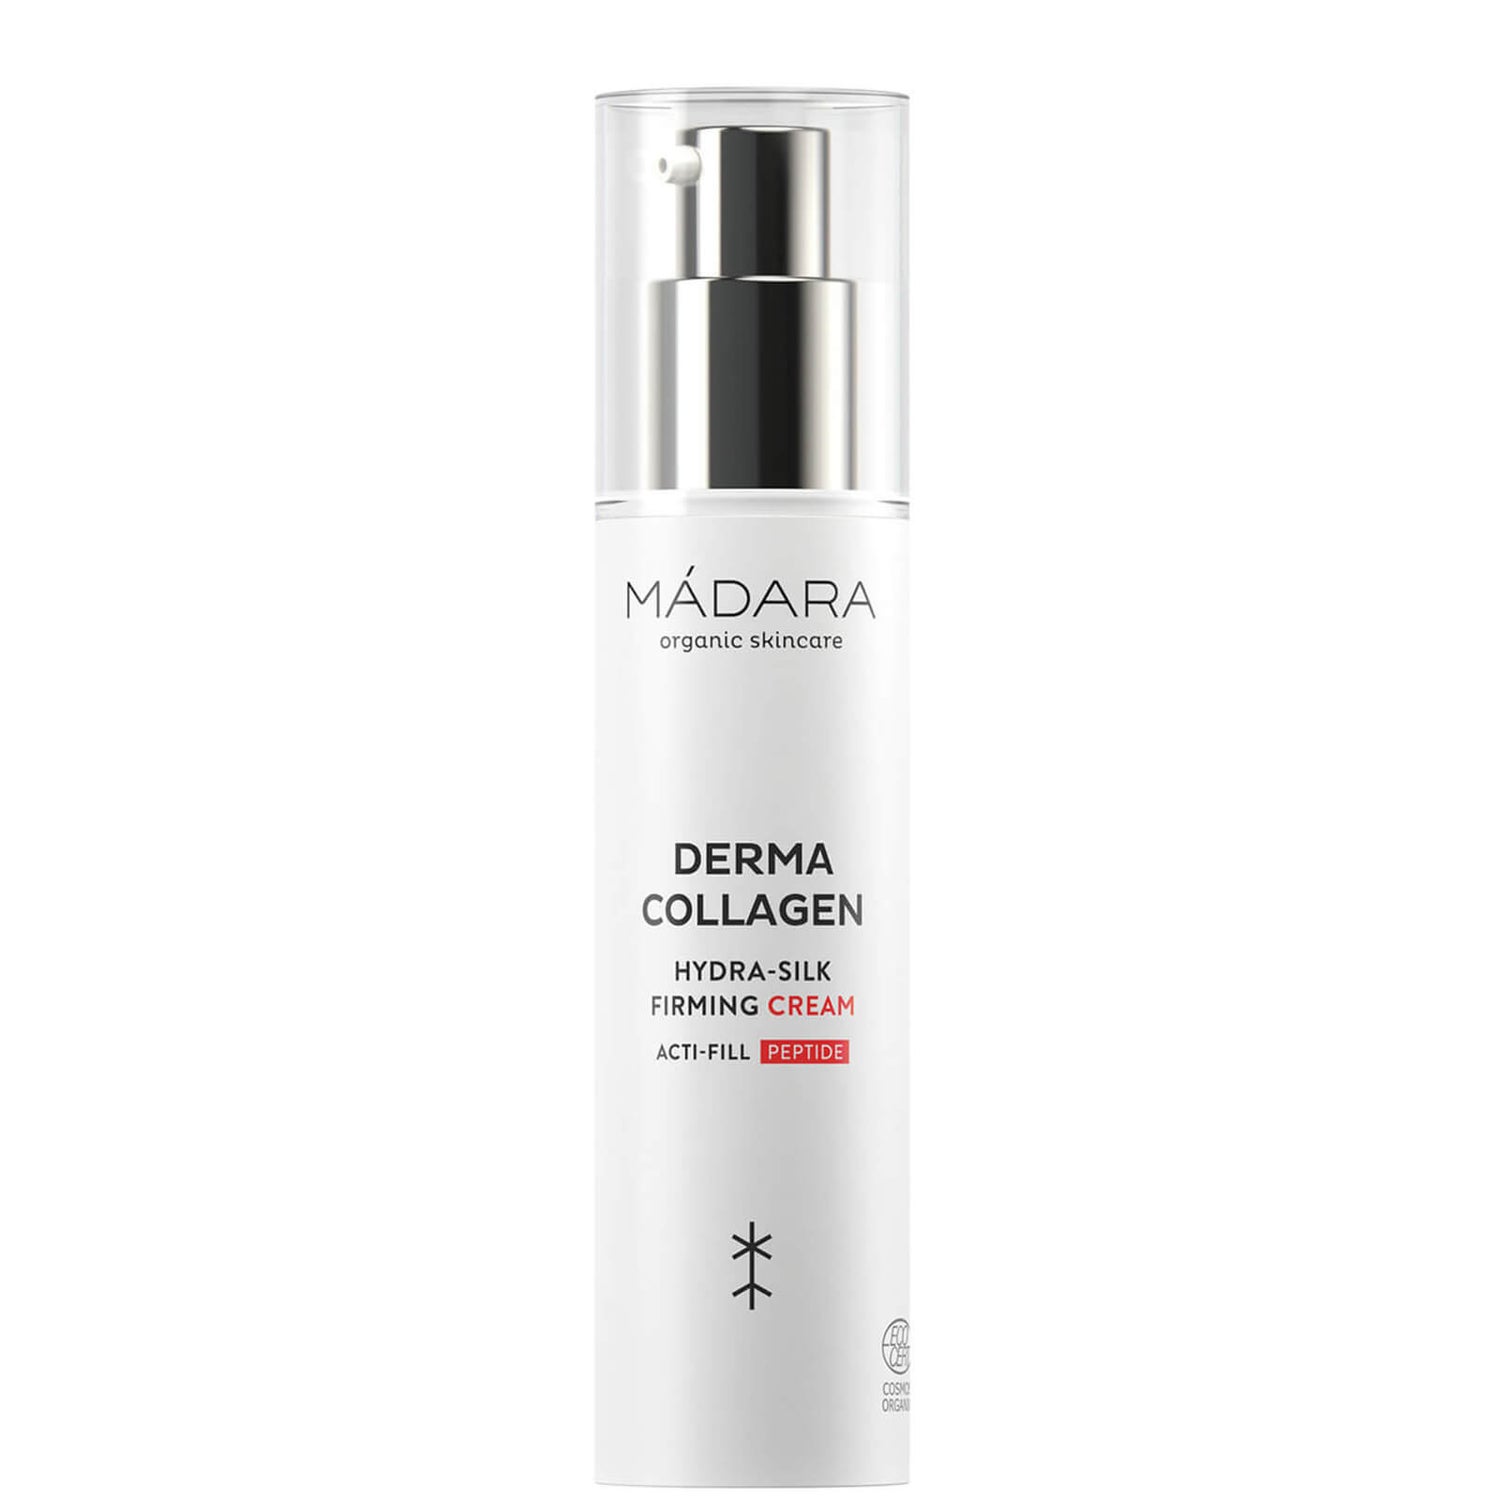 MÁDARA Derma Collagen Hydra-Silk Firming Crema 50ml